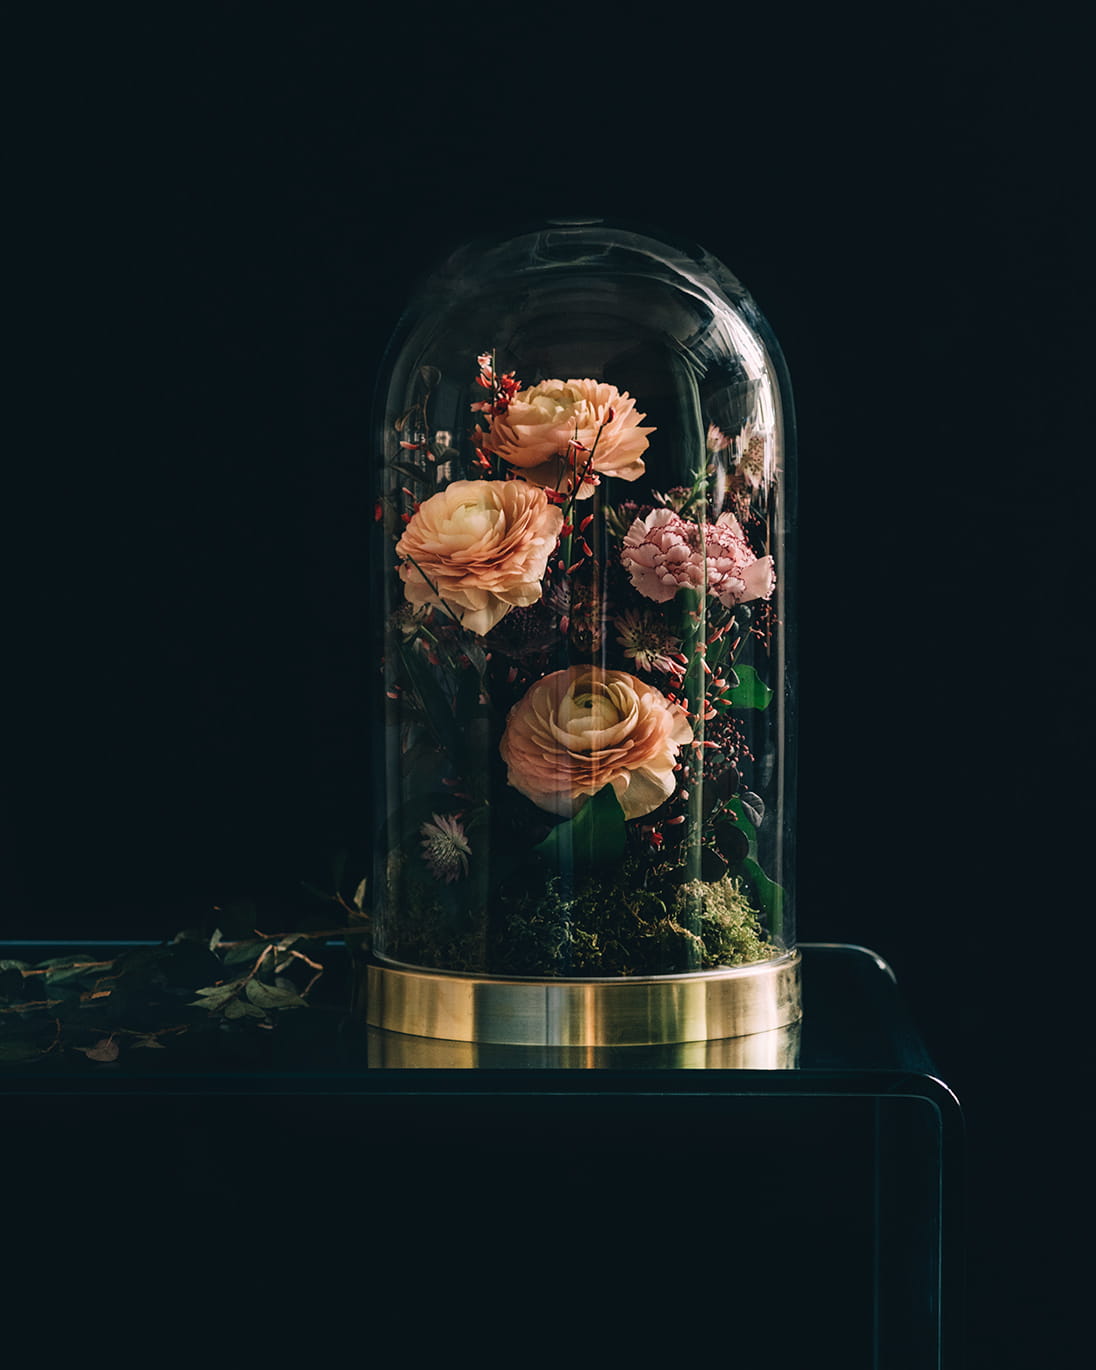 圓鼓鼓的小牡丹與清新的康乃馨，配搭金邊鐘罩花瓶，效果讓人眼前一亮